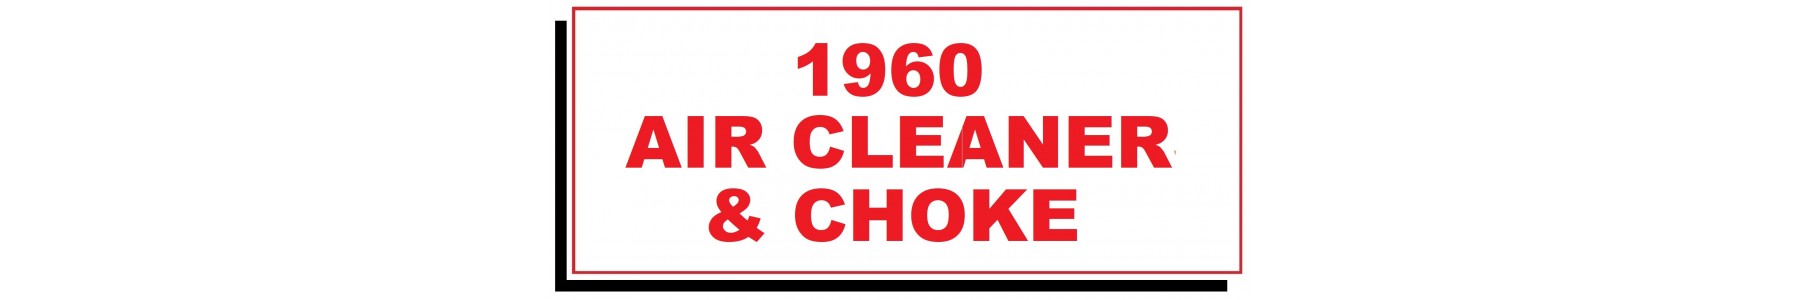 1960 AIR CLEANER & CHOKE